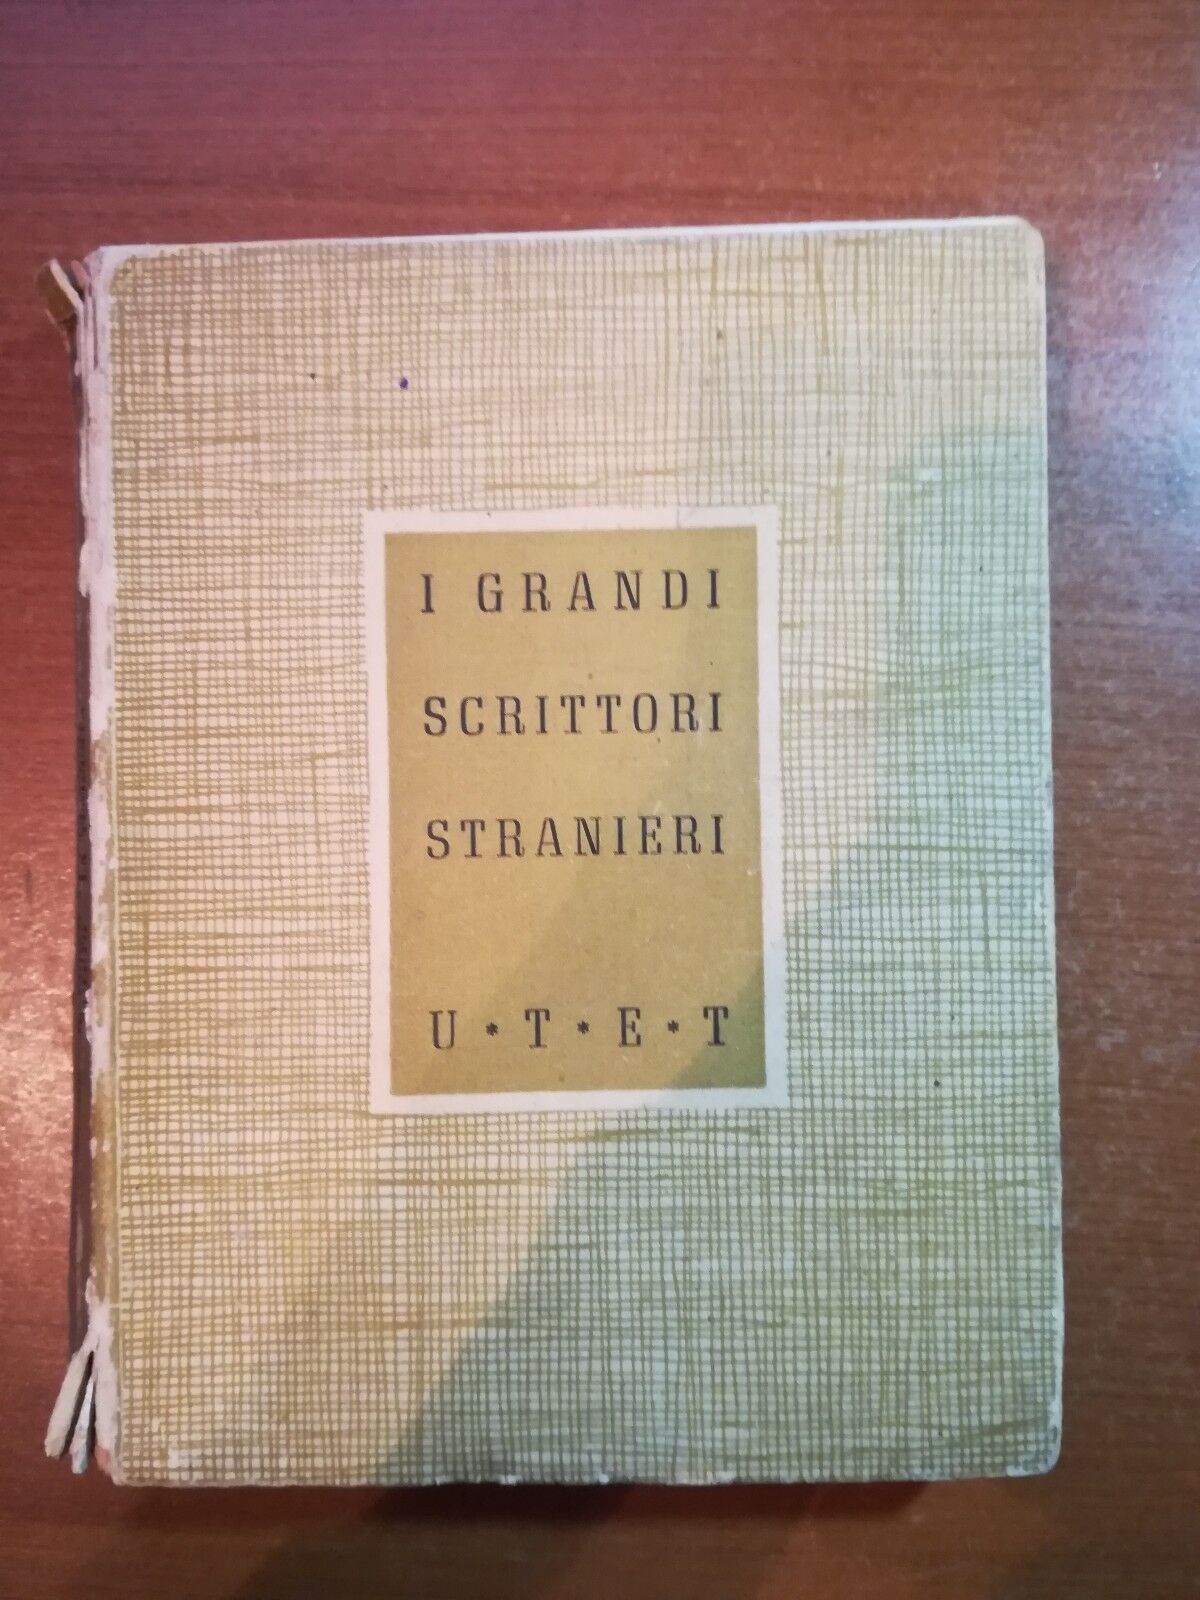 I grandi scrittori Stranieri - Arturo Farinelli - U.T.E.T - 1945  -  M